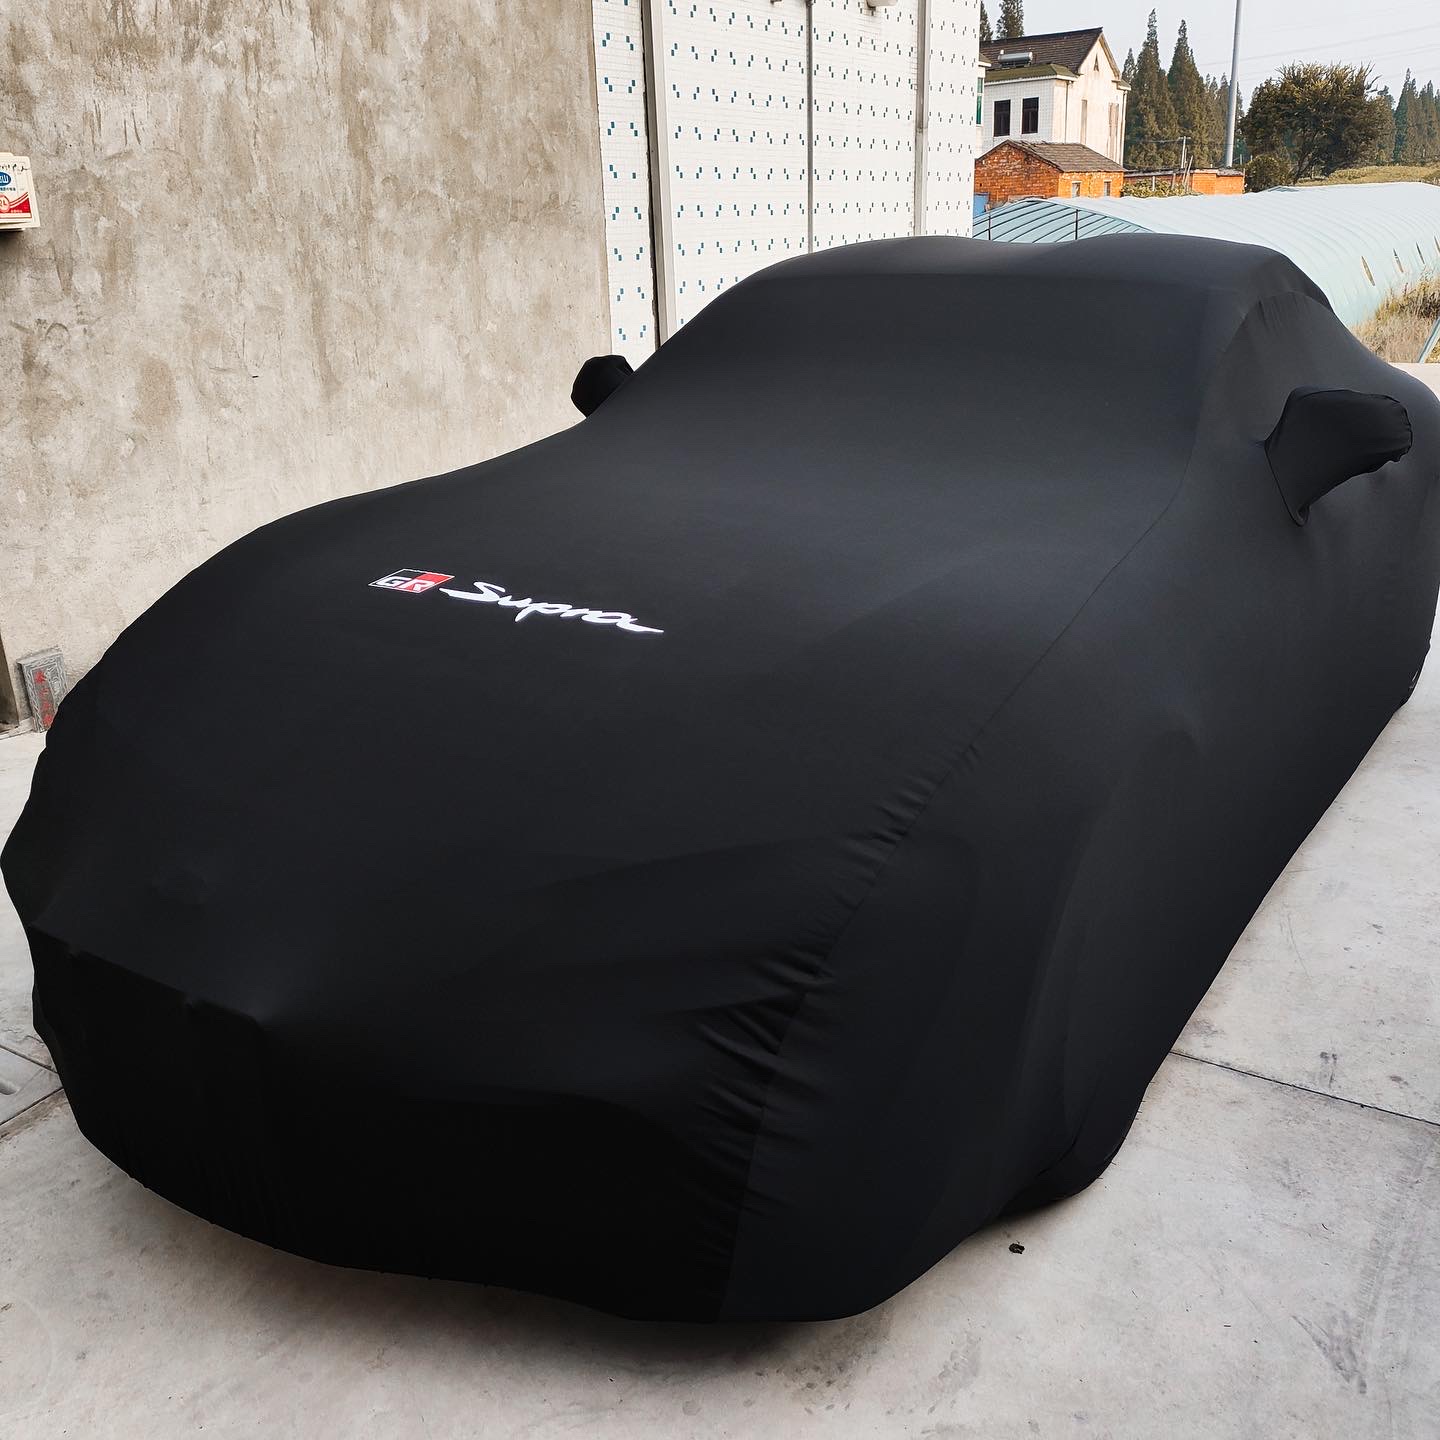 2021 Toyota Supra Outdoor Car Cover